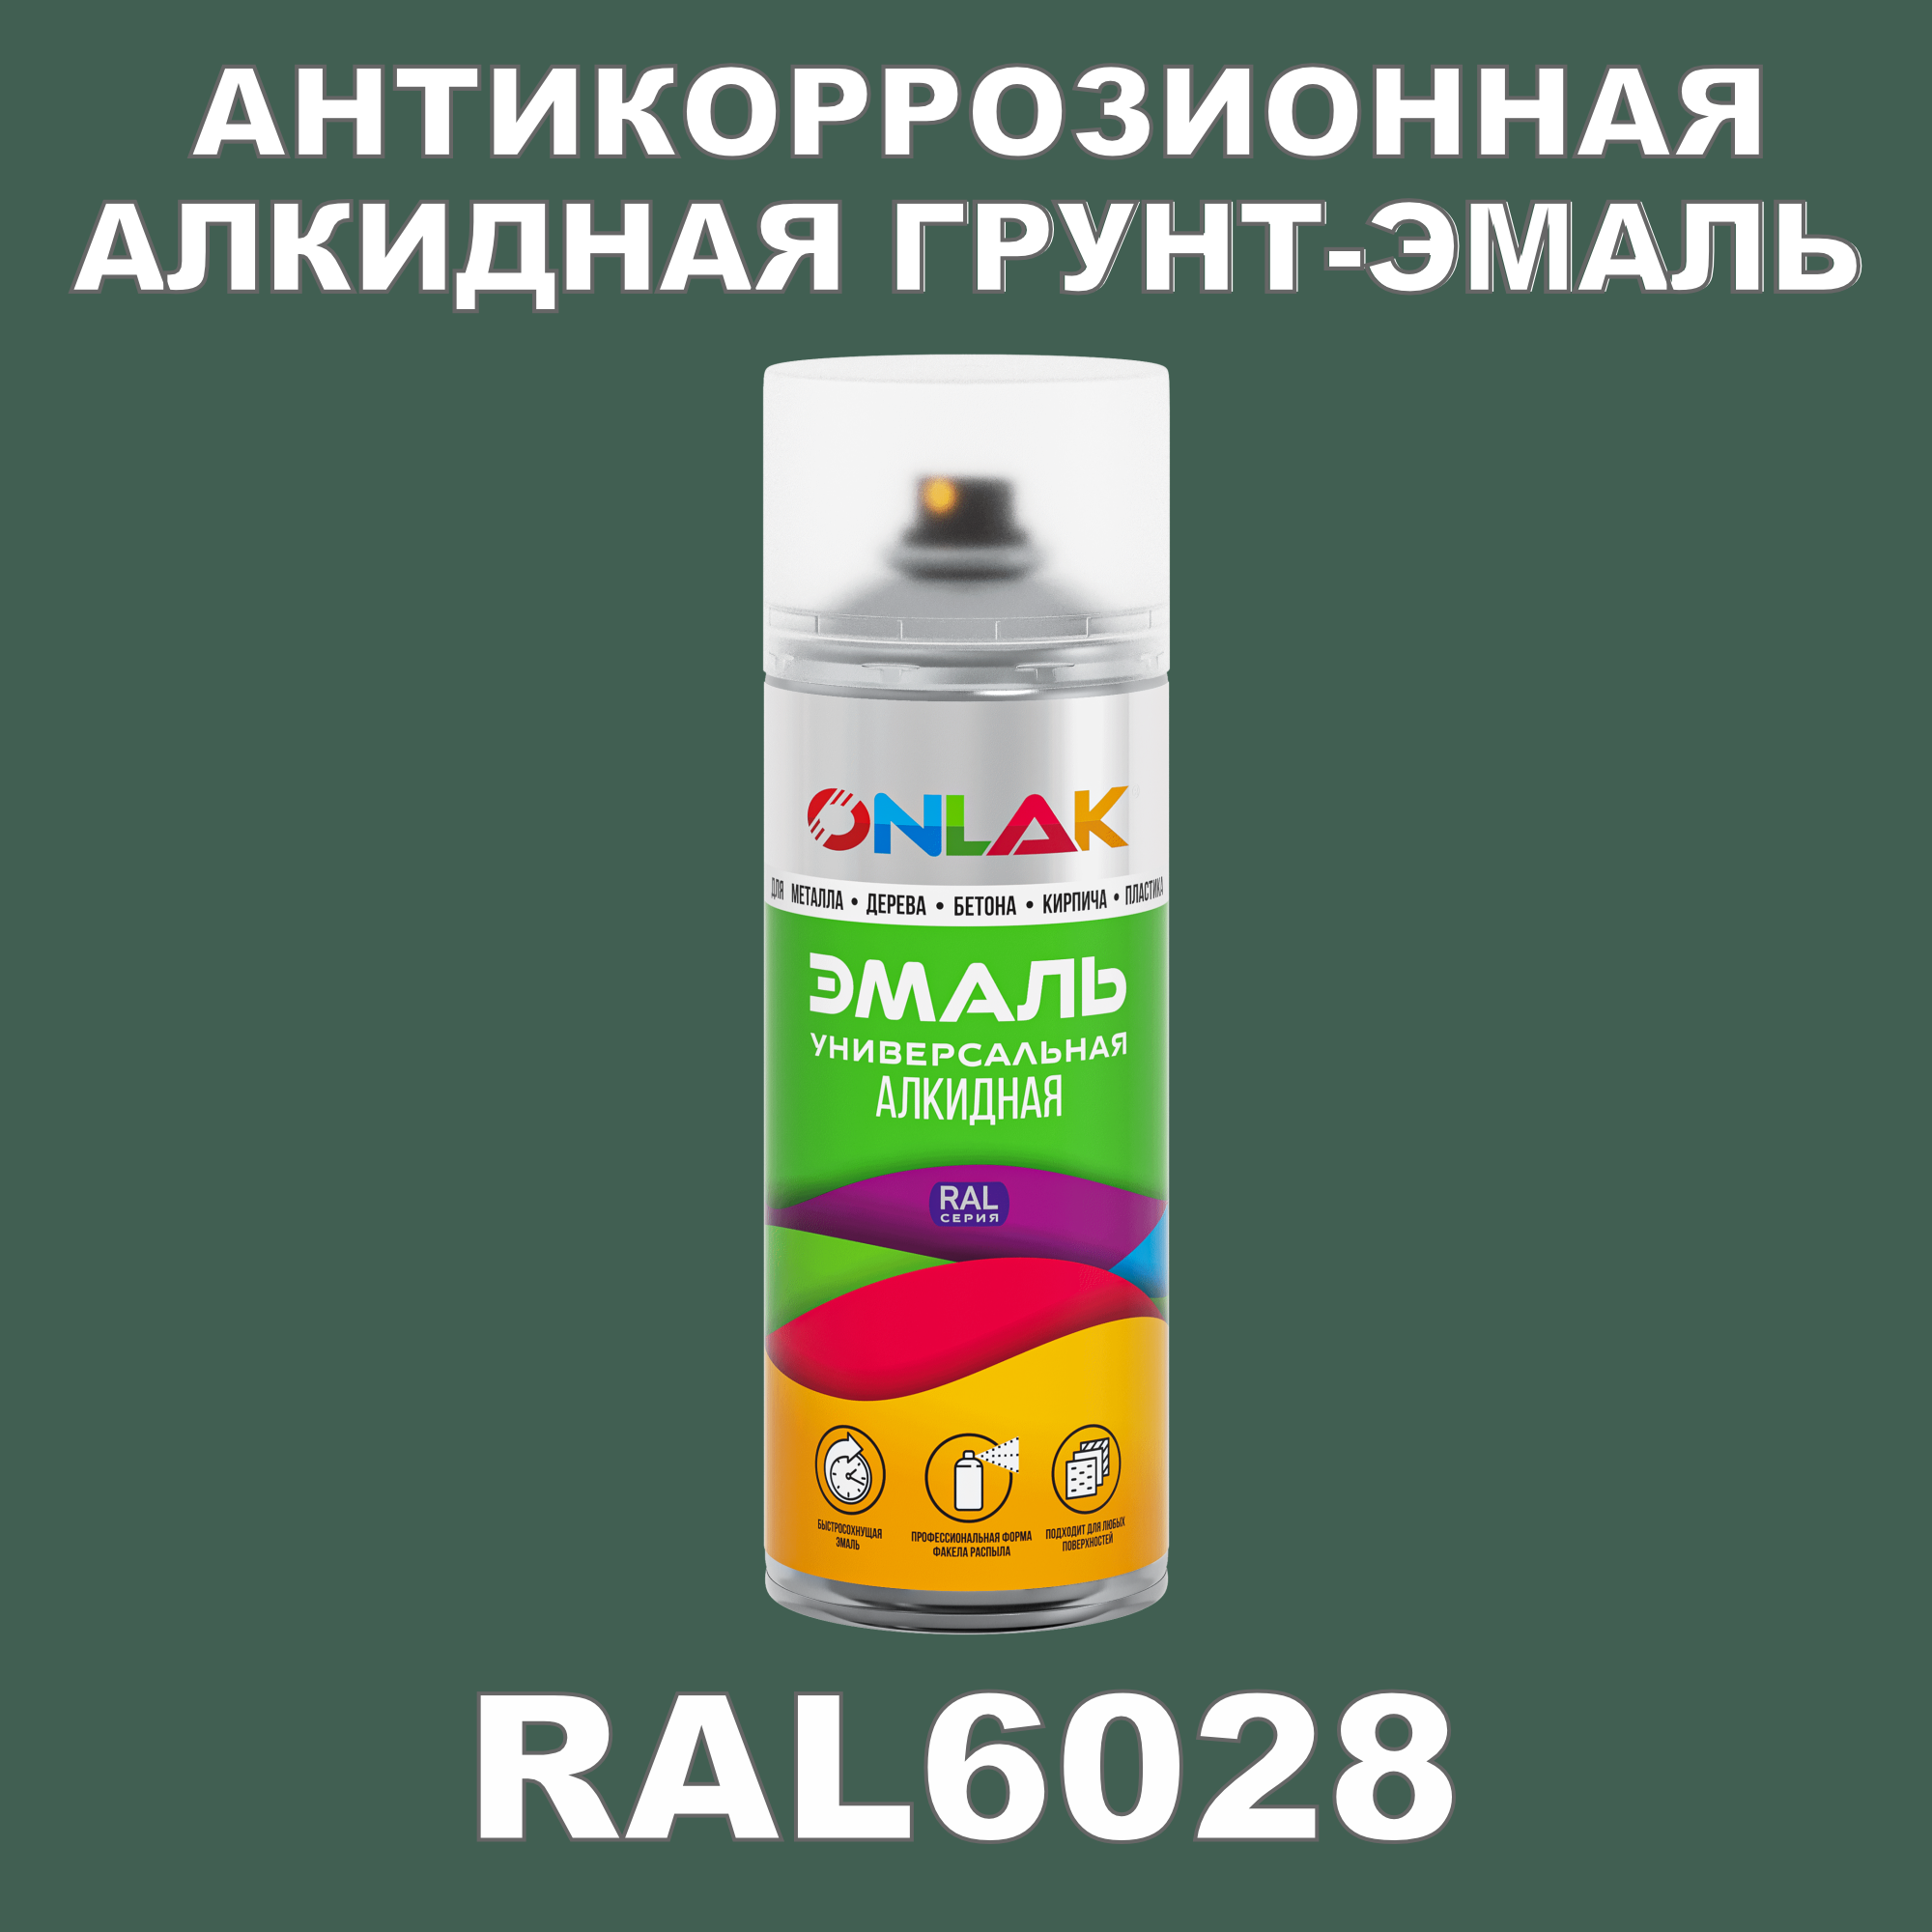 Антикоррозионная грунт-эмаль ONLAK RAL 6028,зеленый,538 мл